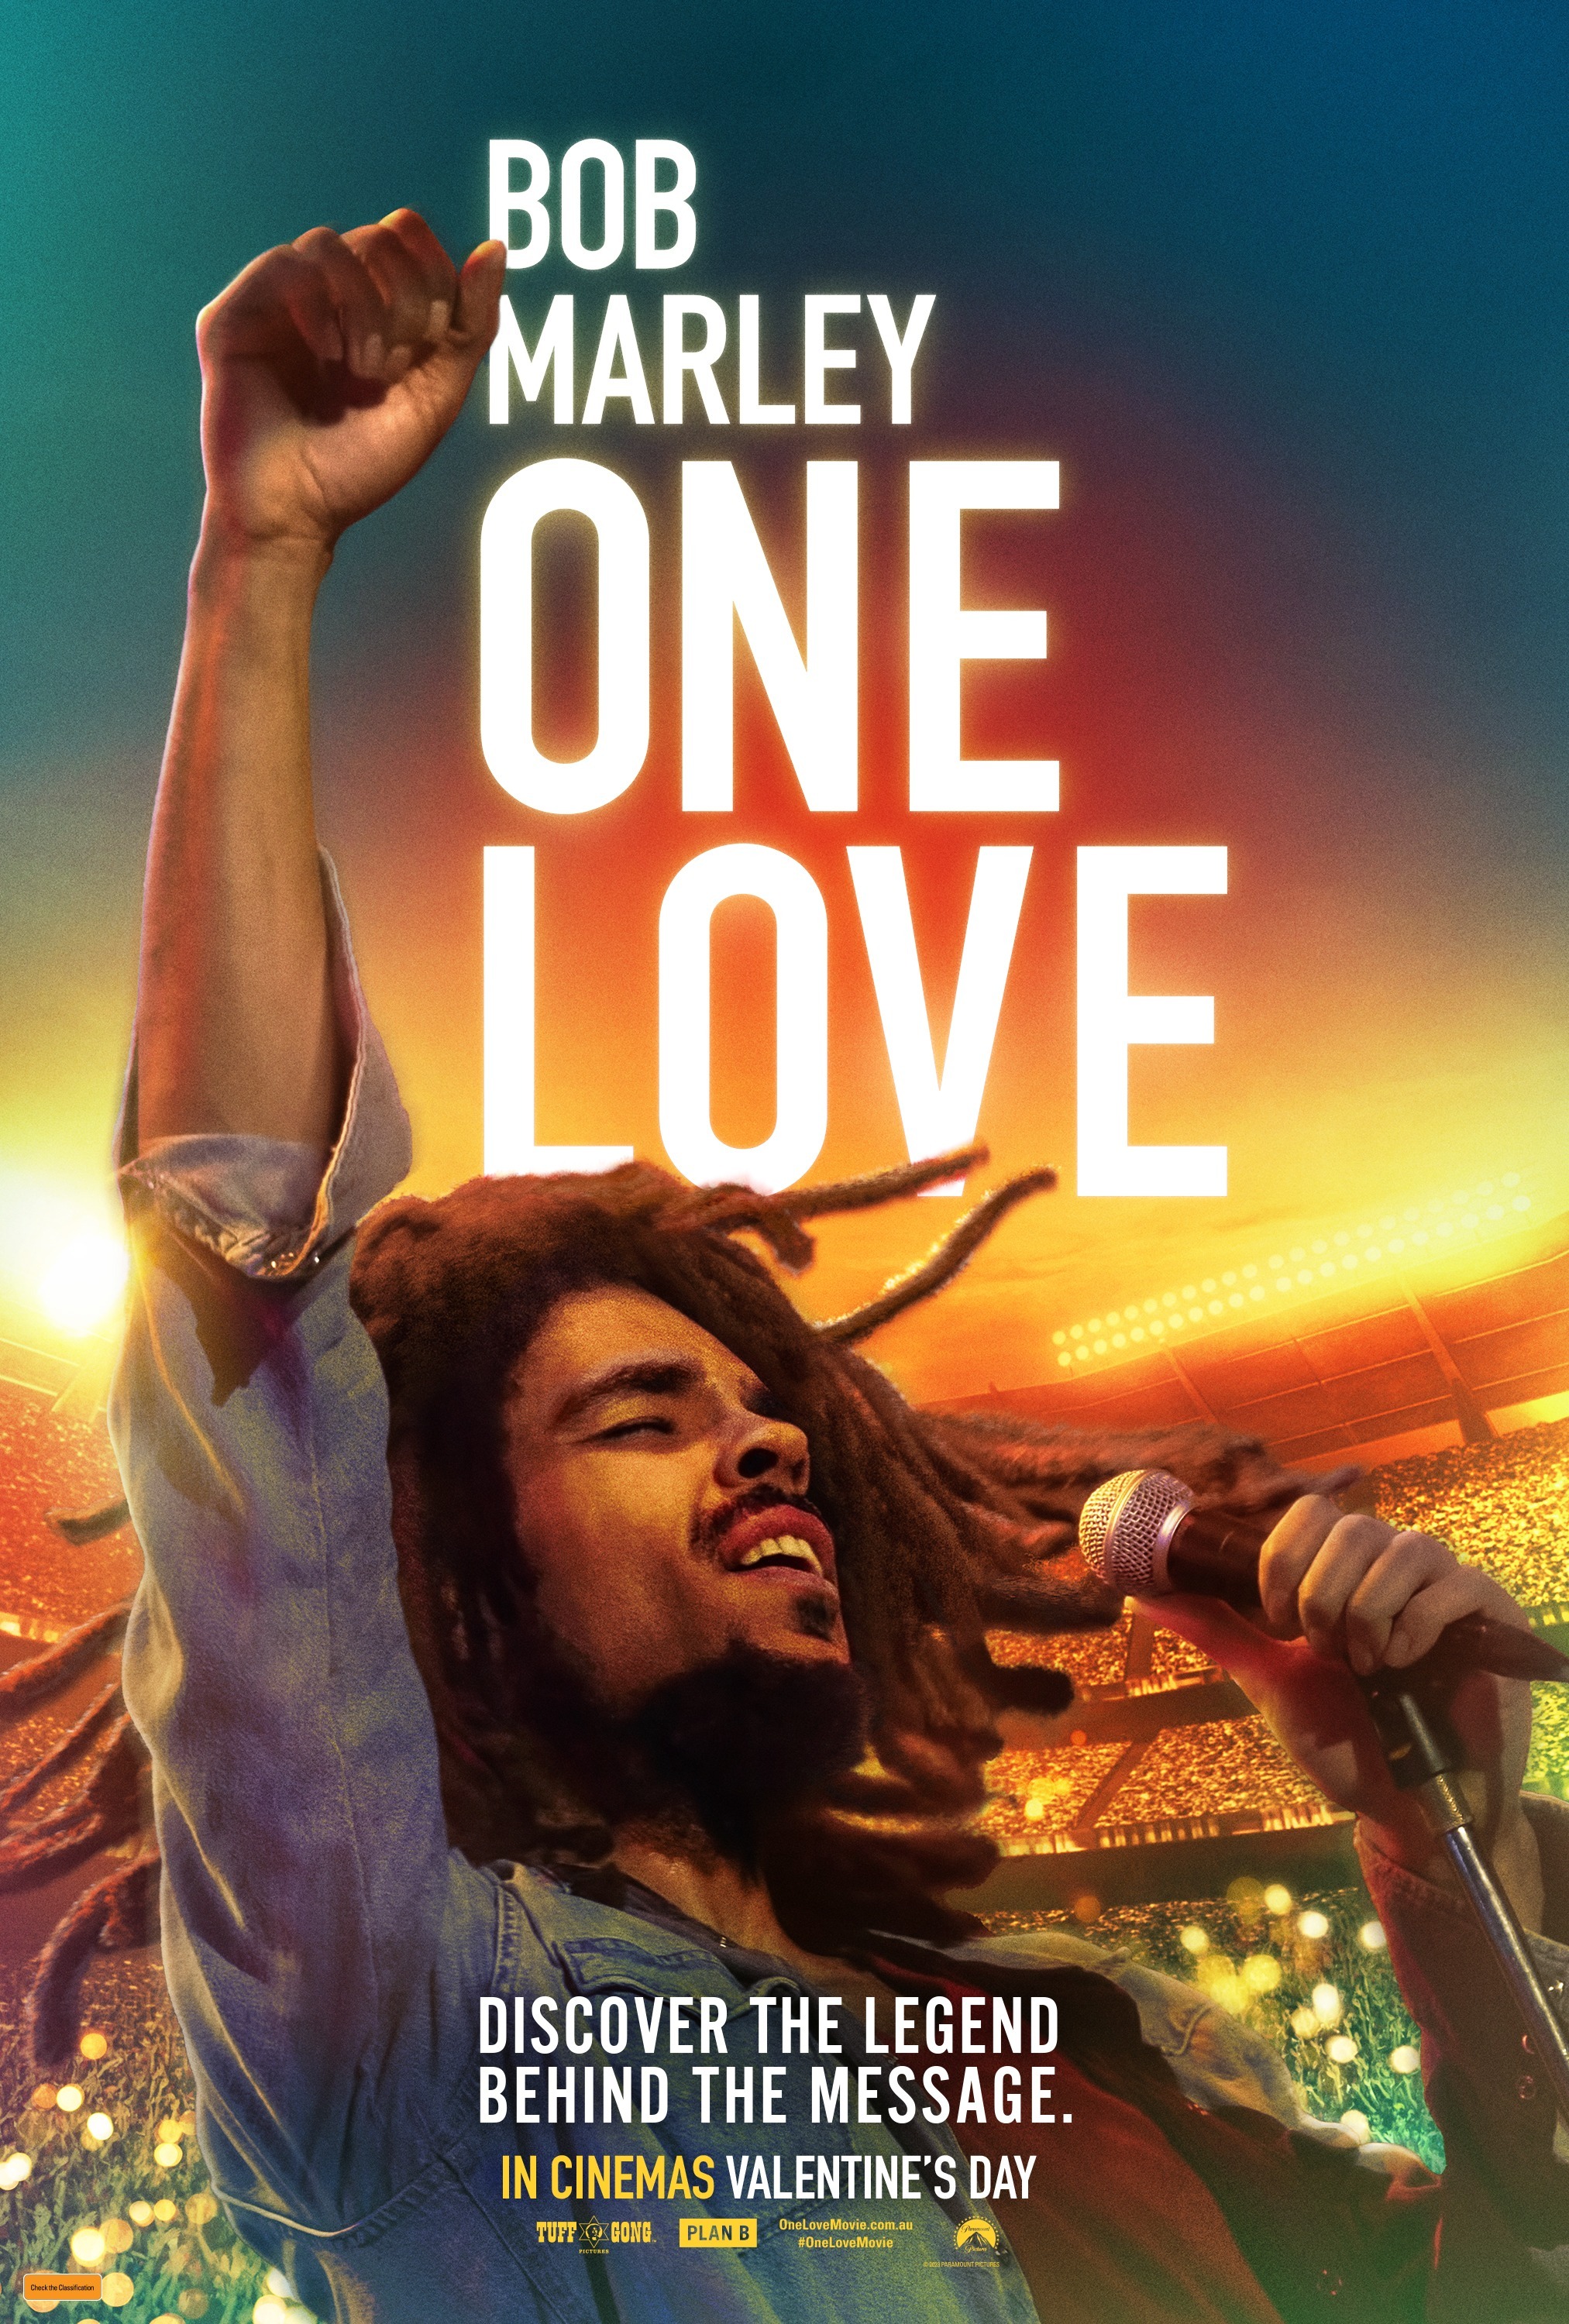 Bob Marley One Love (3 of 5) Mega Sized Movie Poster Image IMP Awards